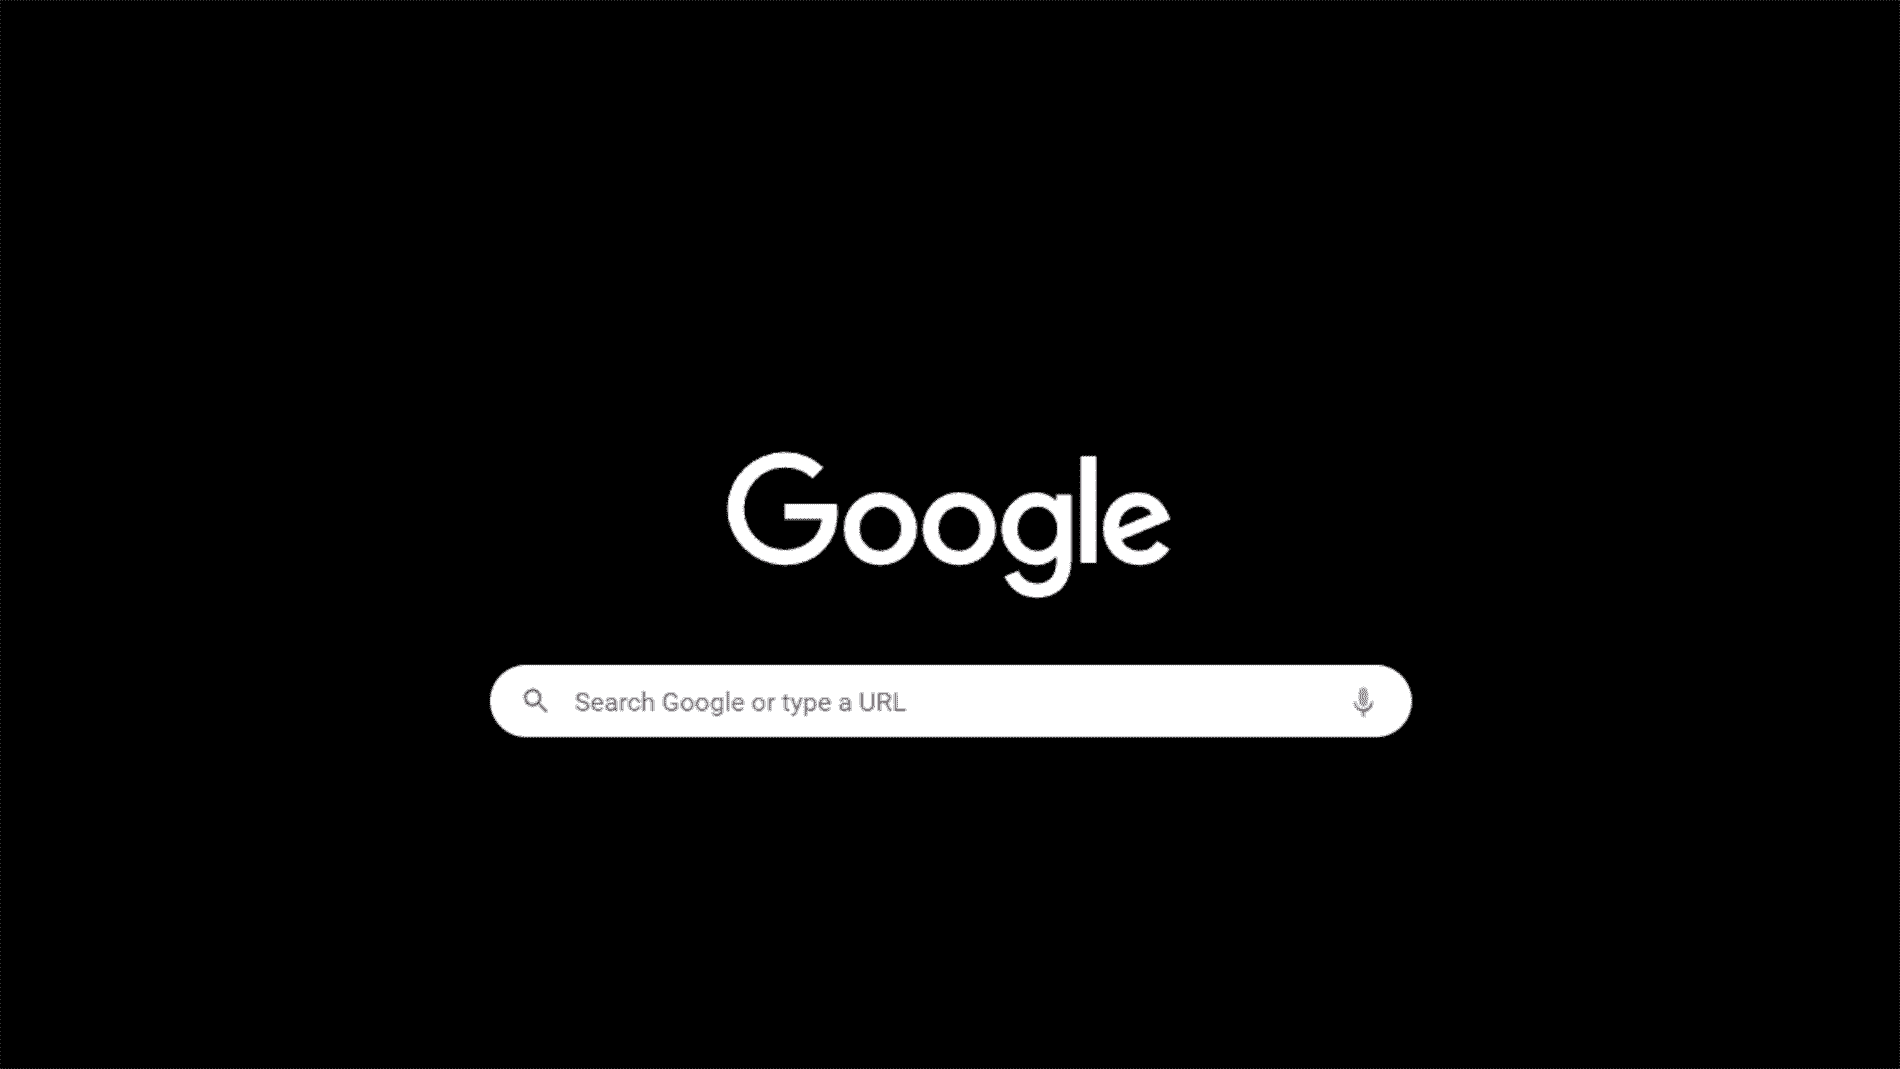 Le nouveau mode sombre plus sombre de Google - c'est un écran noir avec une orthographe en lettres blanches Google